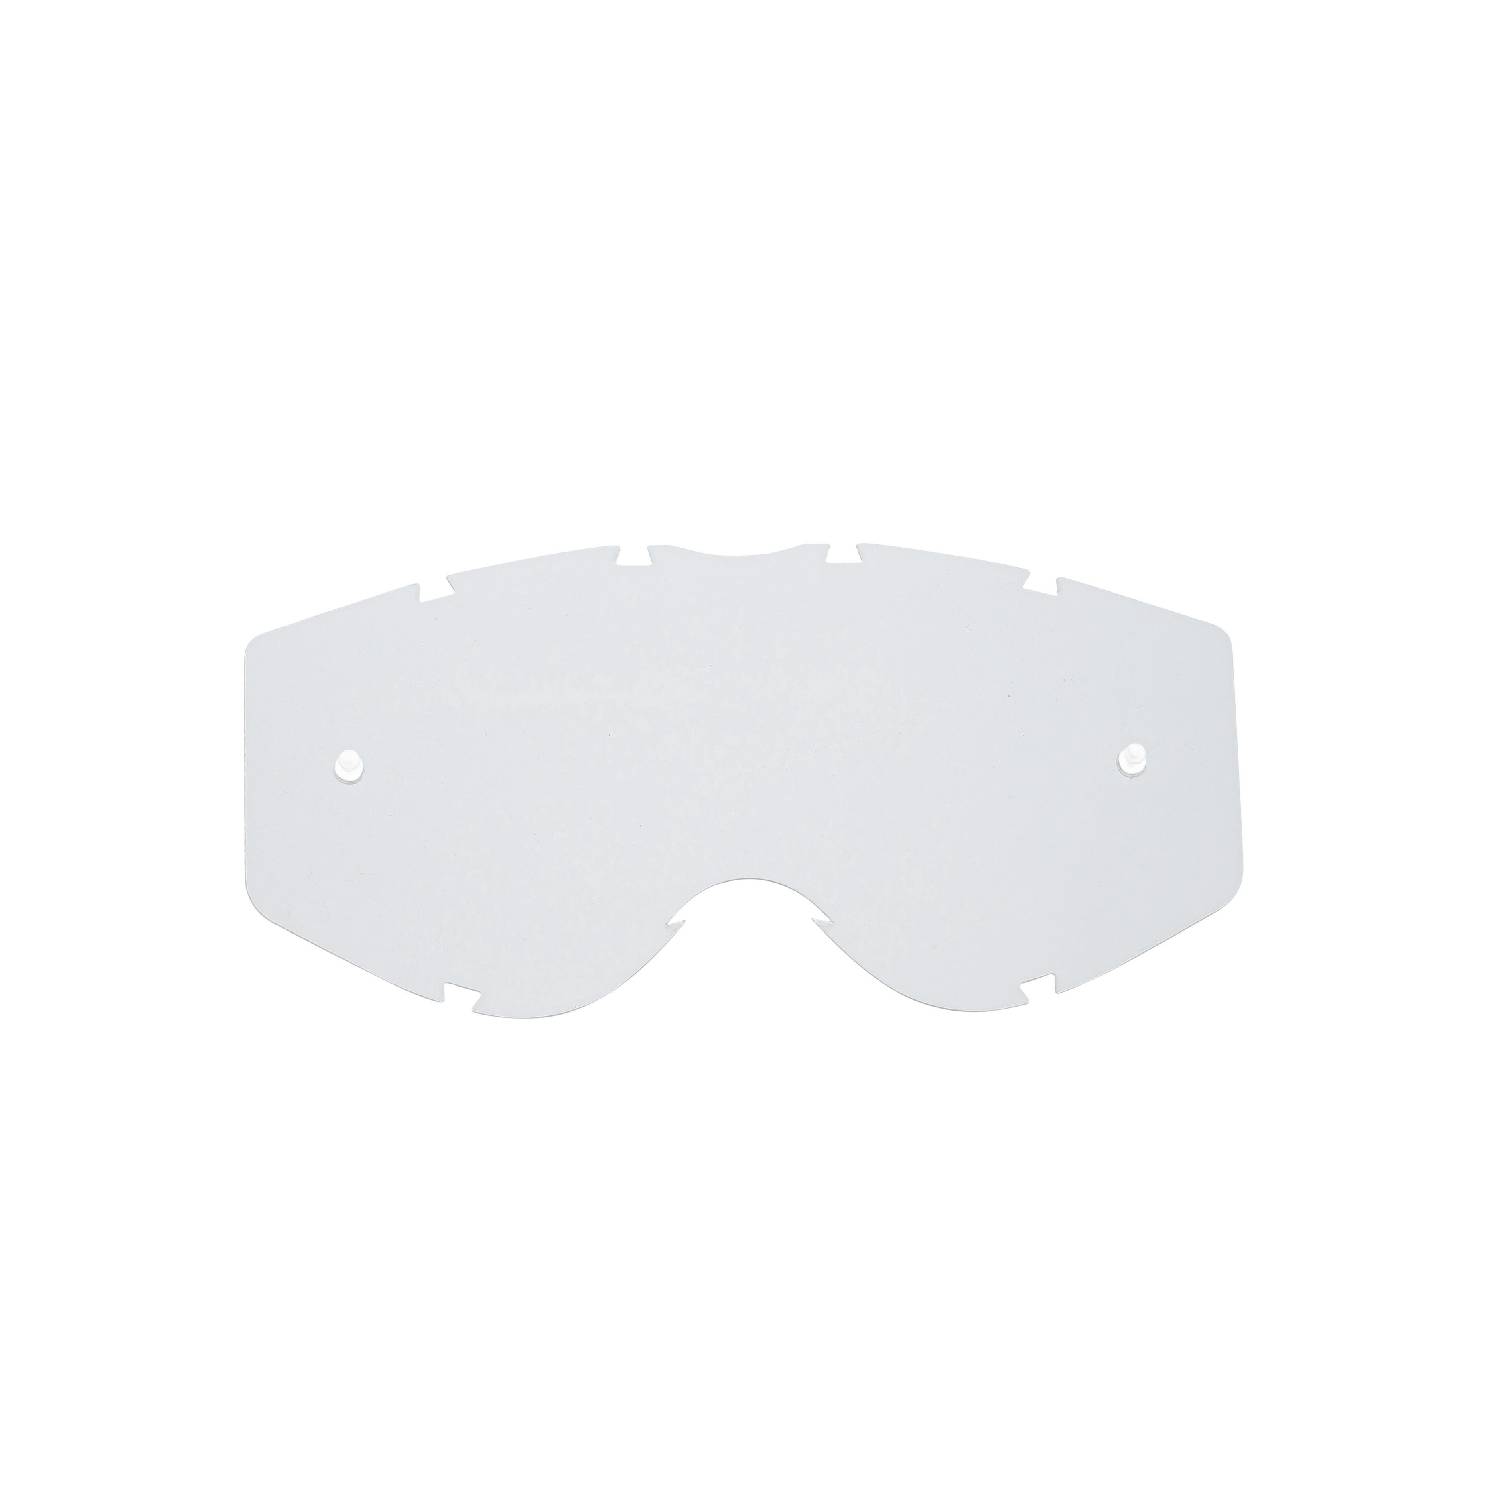 Lente di ricambio trasparente compatibile per occhiale/maschera Progrip 3303 Vista